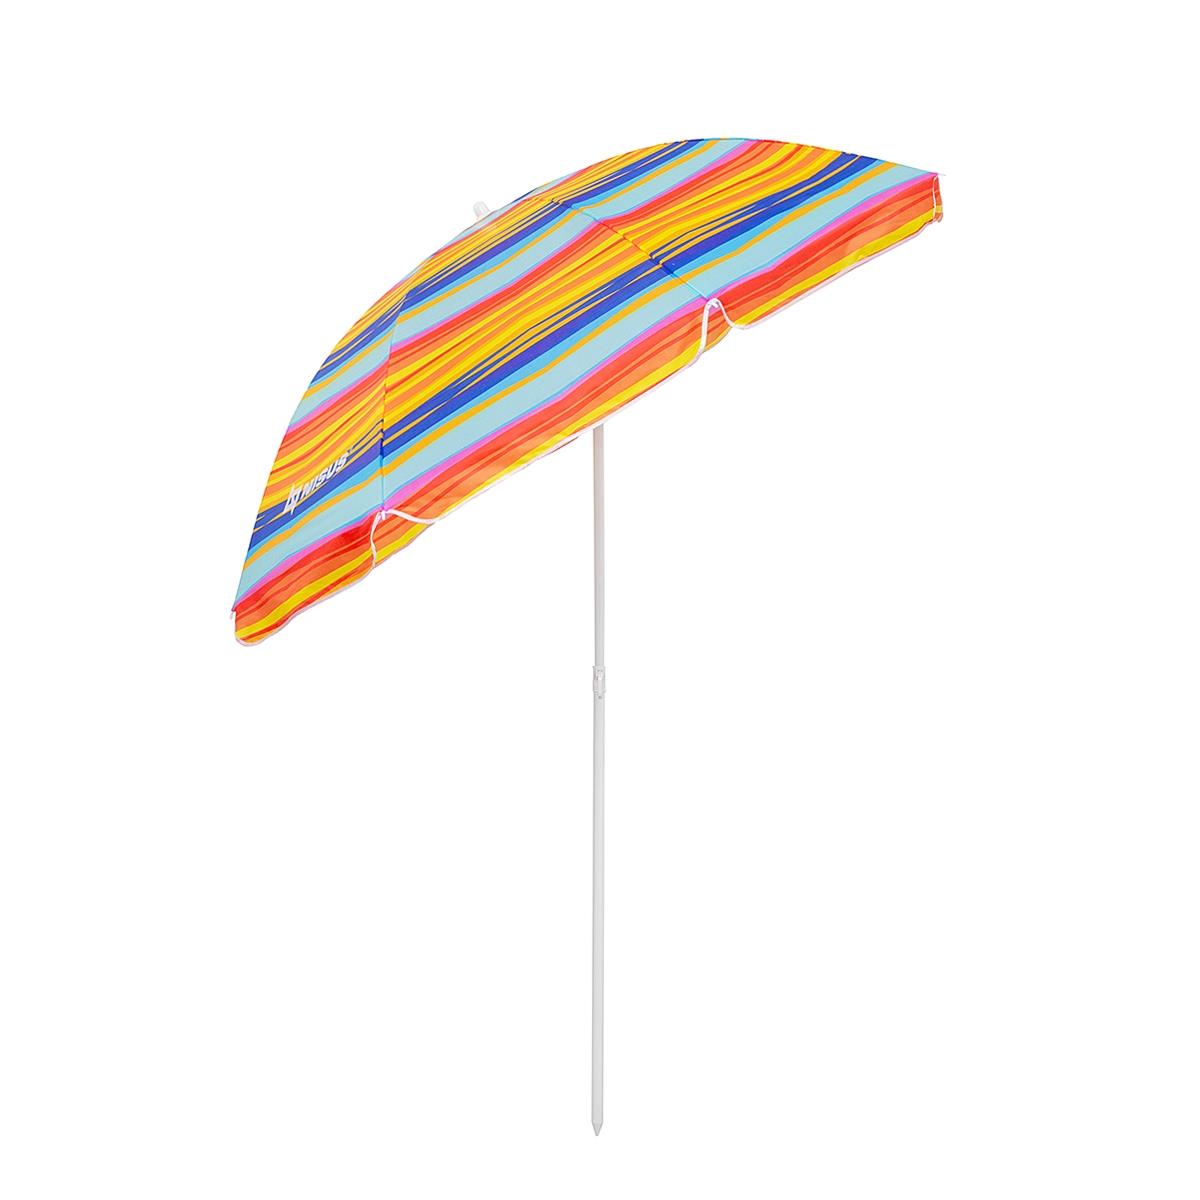 Зонт пляжный d 2,00м с наклоном (22/25/170Т) NA-200N-SO Nisus зонт пляжный d 1 8м с наклоном арбуз 19 22 170т na bu1907 180 w nisus